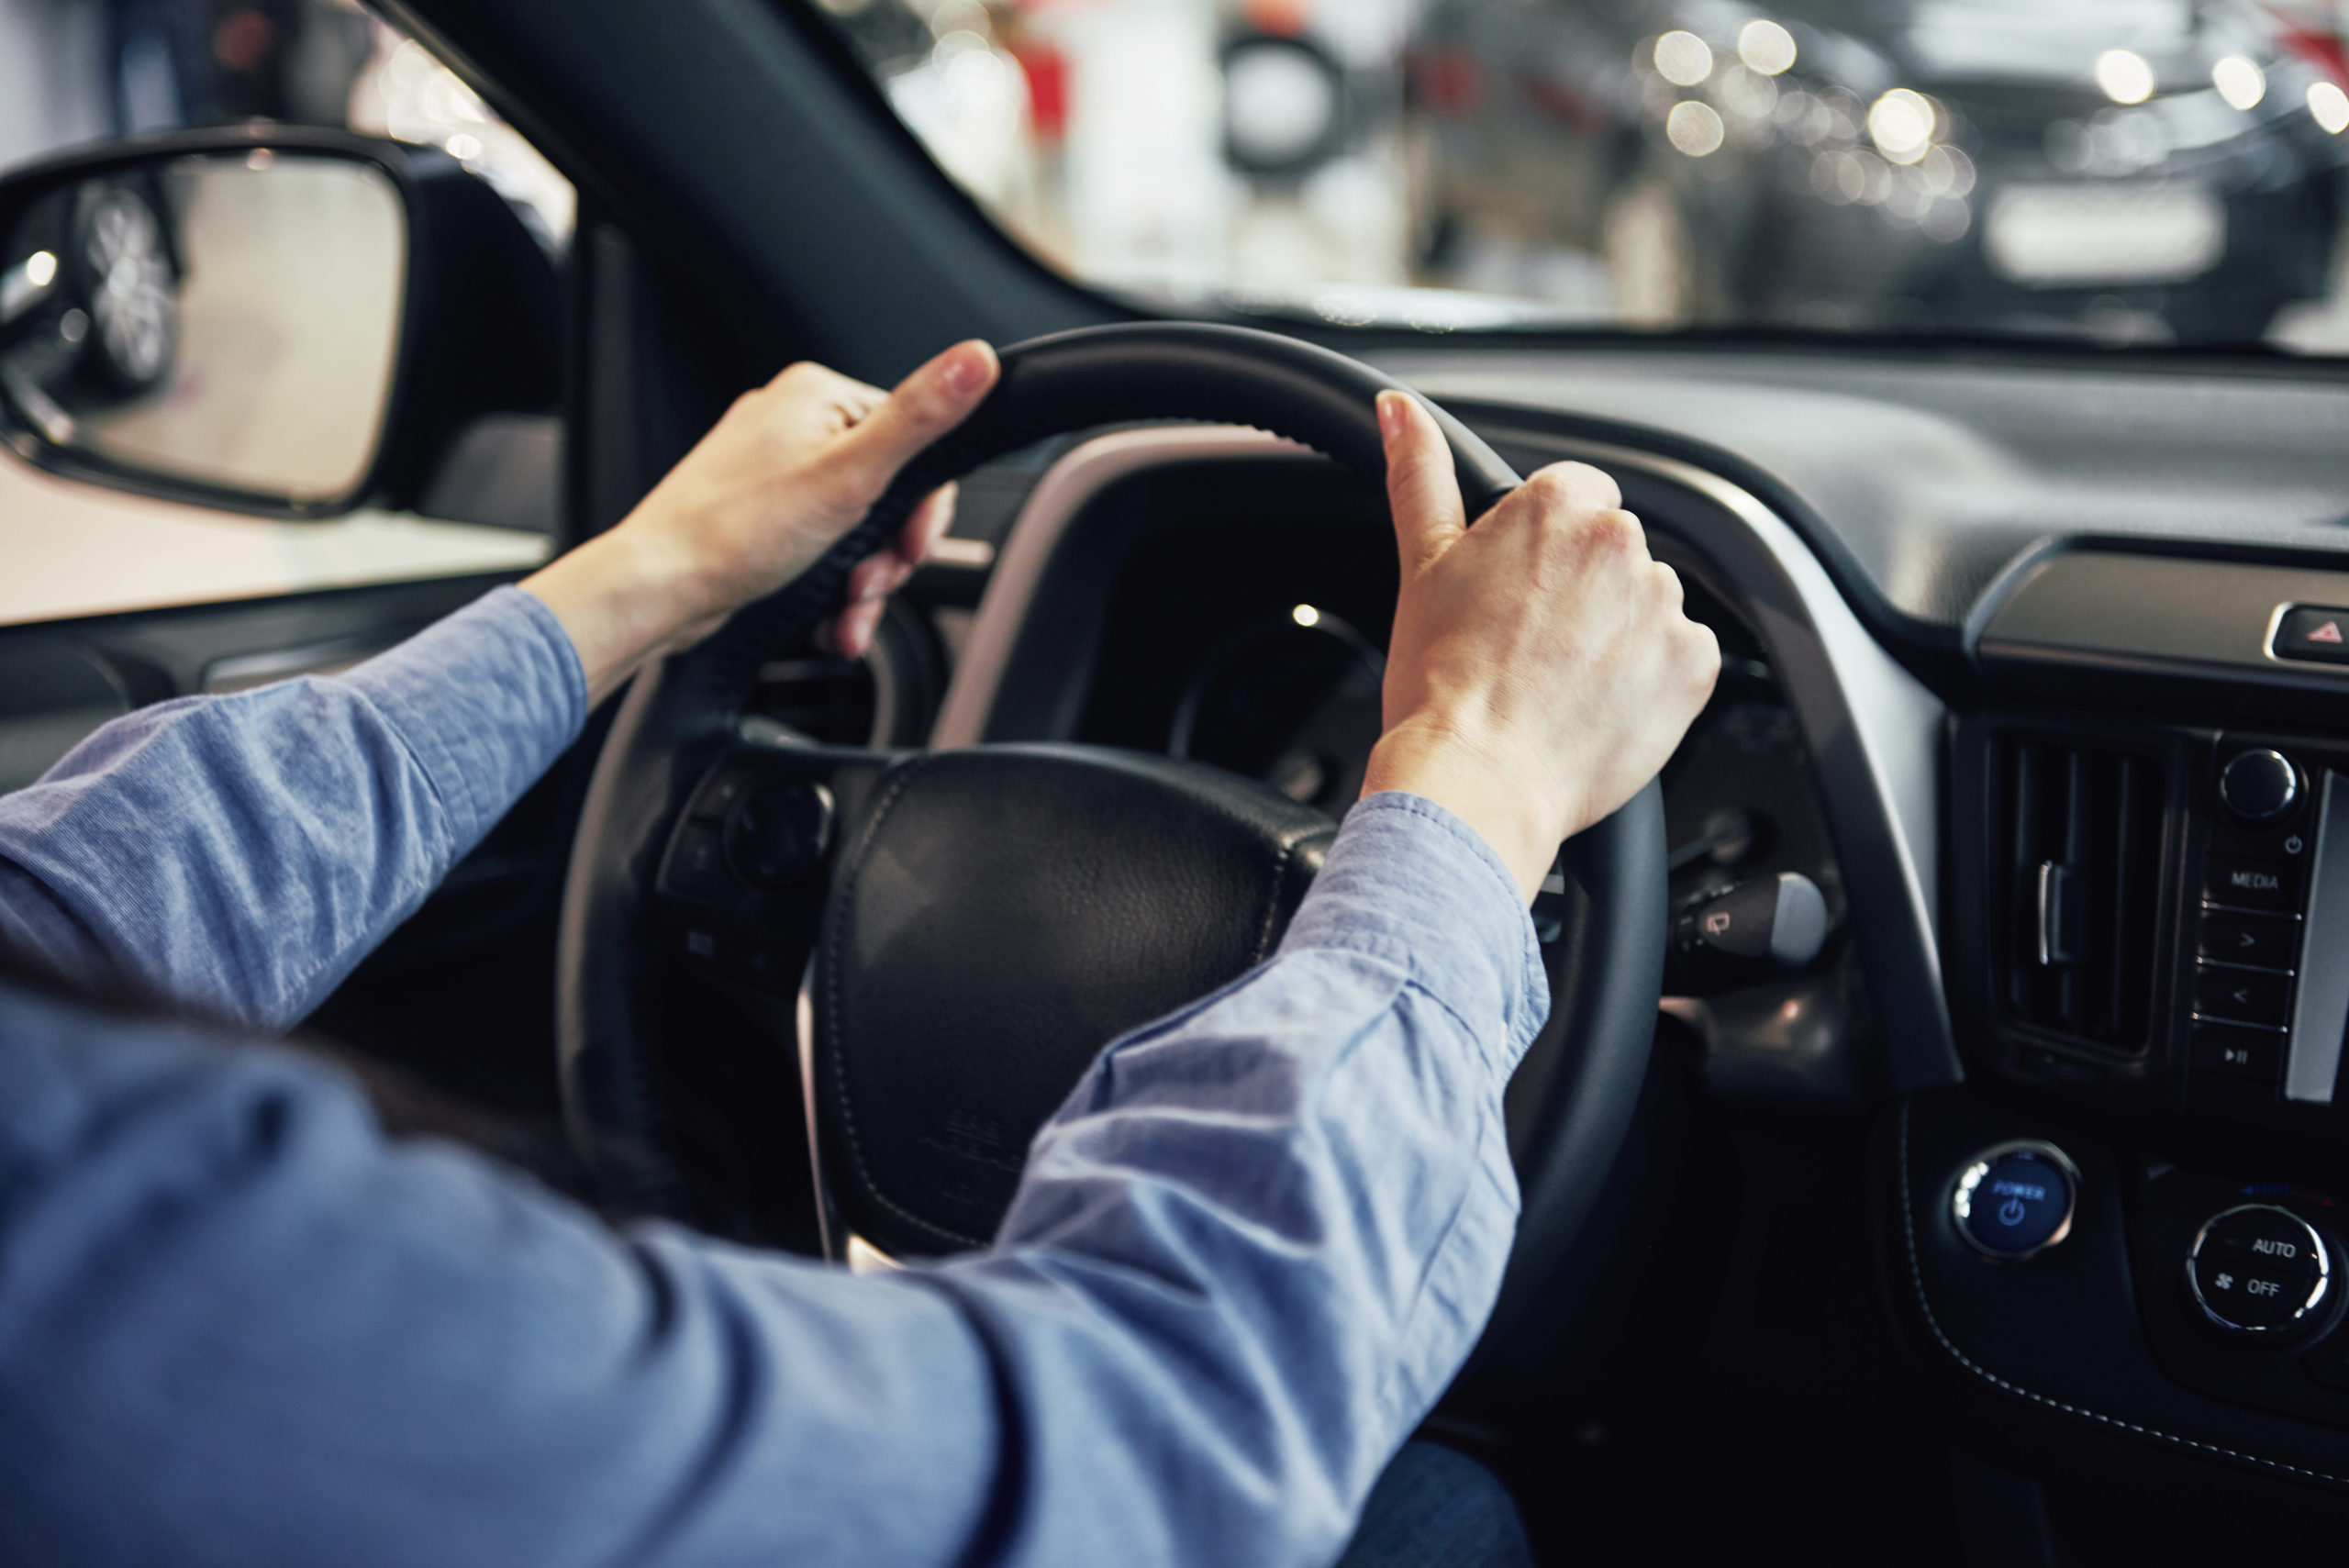 Permis de conduire: Les nouvelles mesures constituent une infraction aux règles de la sécurité routière, selon Omar Fetoui [Audio]